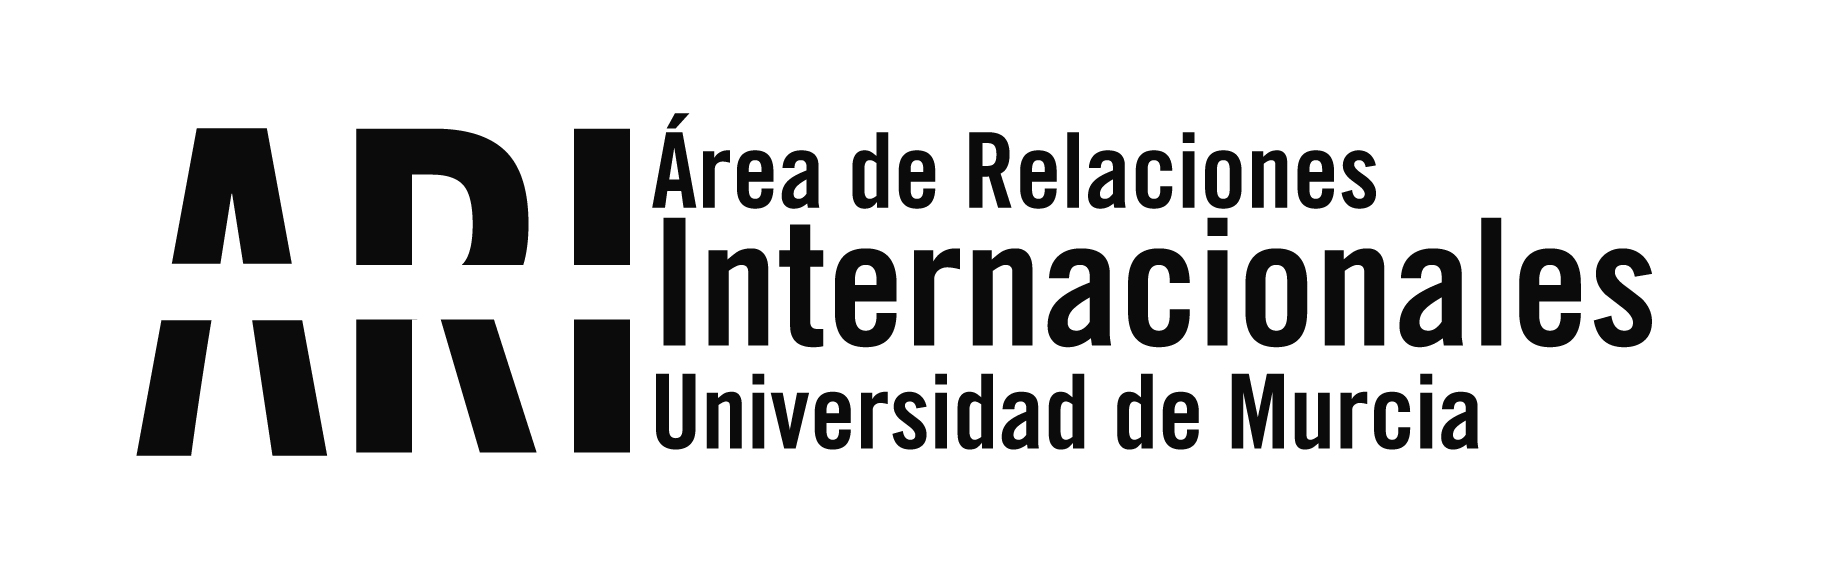 El equipo de Internacionalización de la UMU se reúne con el concejal de Educación del Ayuntamiento de Murcia - Área de Relaciones Internacionales